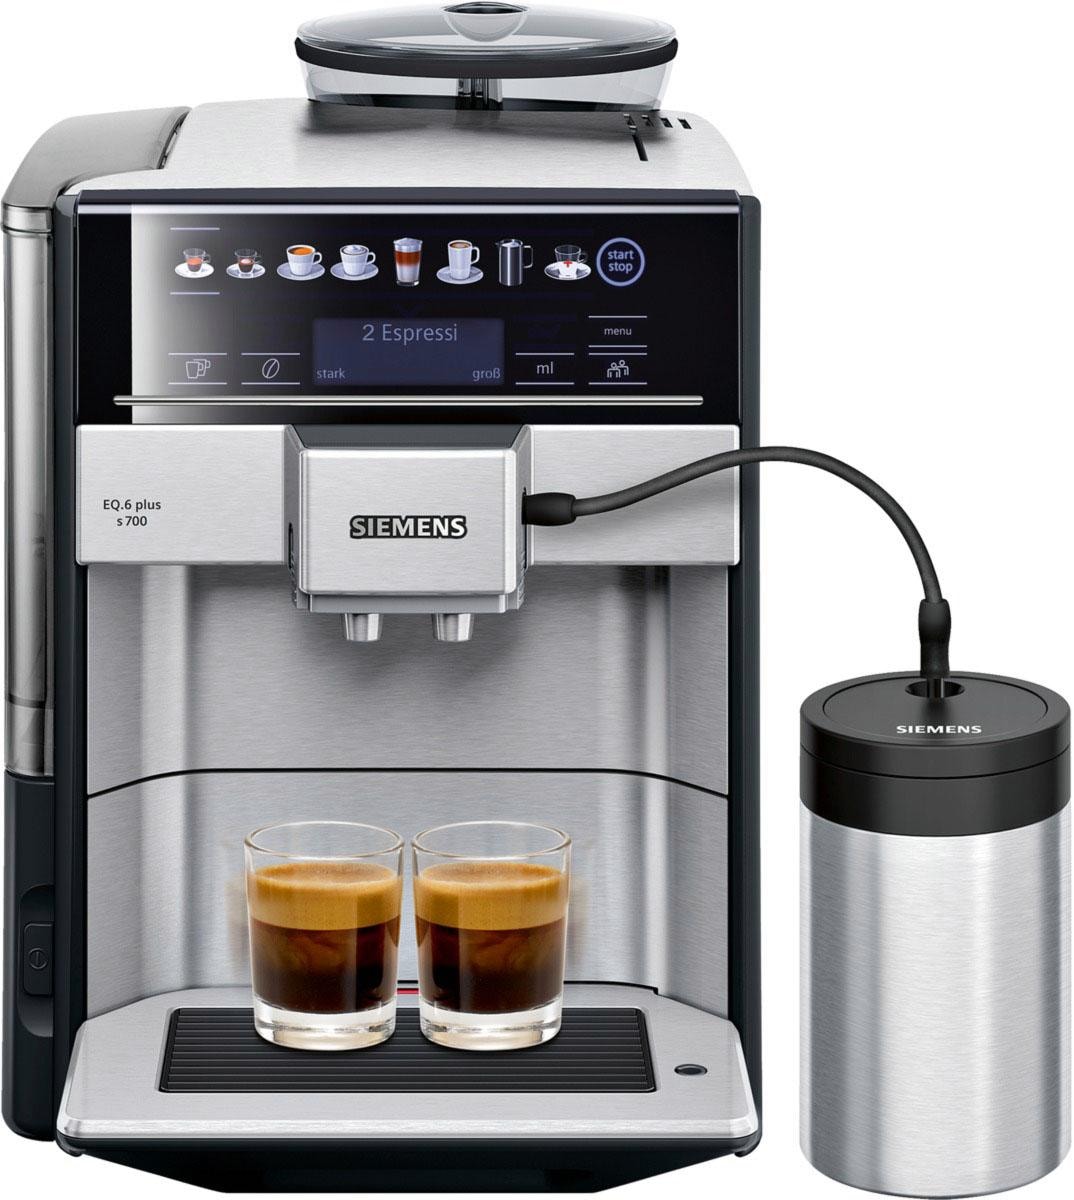 SIEMENS Kaffeevollautomat »EQ.6 plus s700 OTTO Favoriten, Shop autom. isolierter inkl. zu TE657M03DE«, Reinigung, bis Online 4 im Milchbehälter